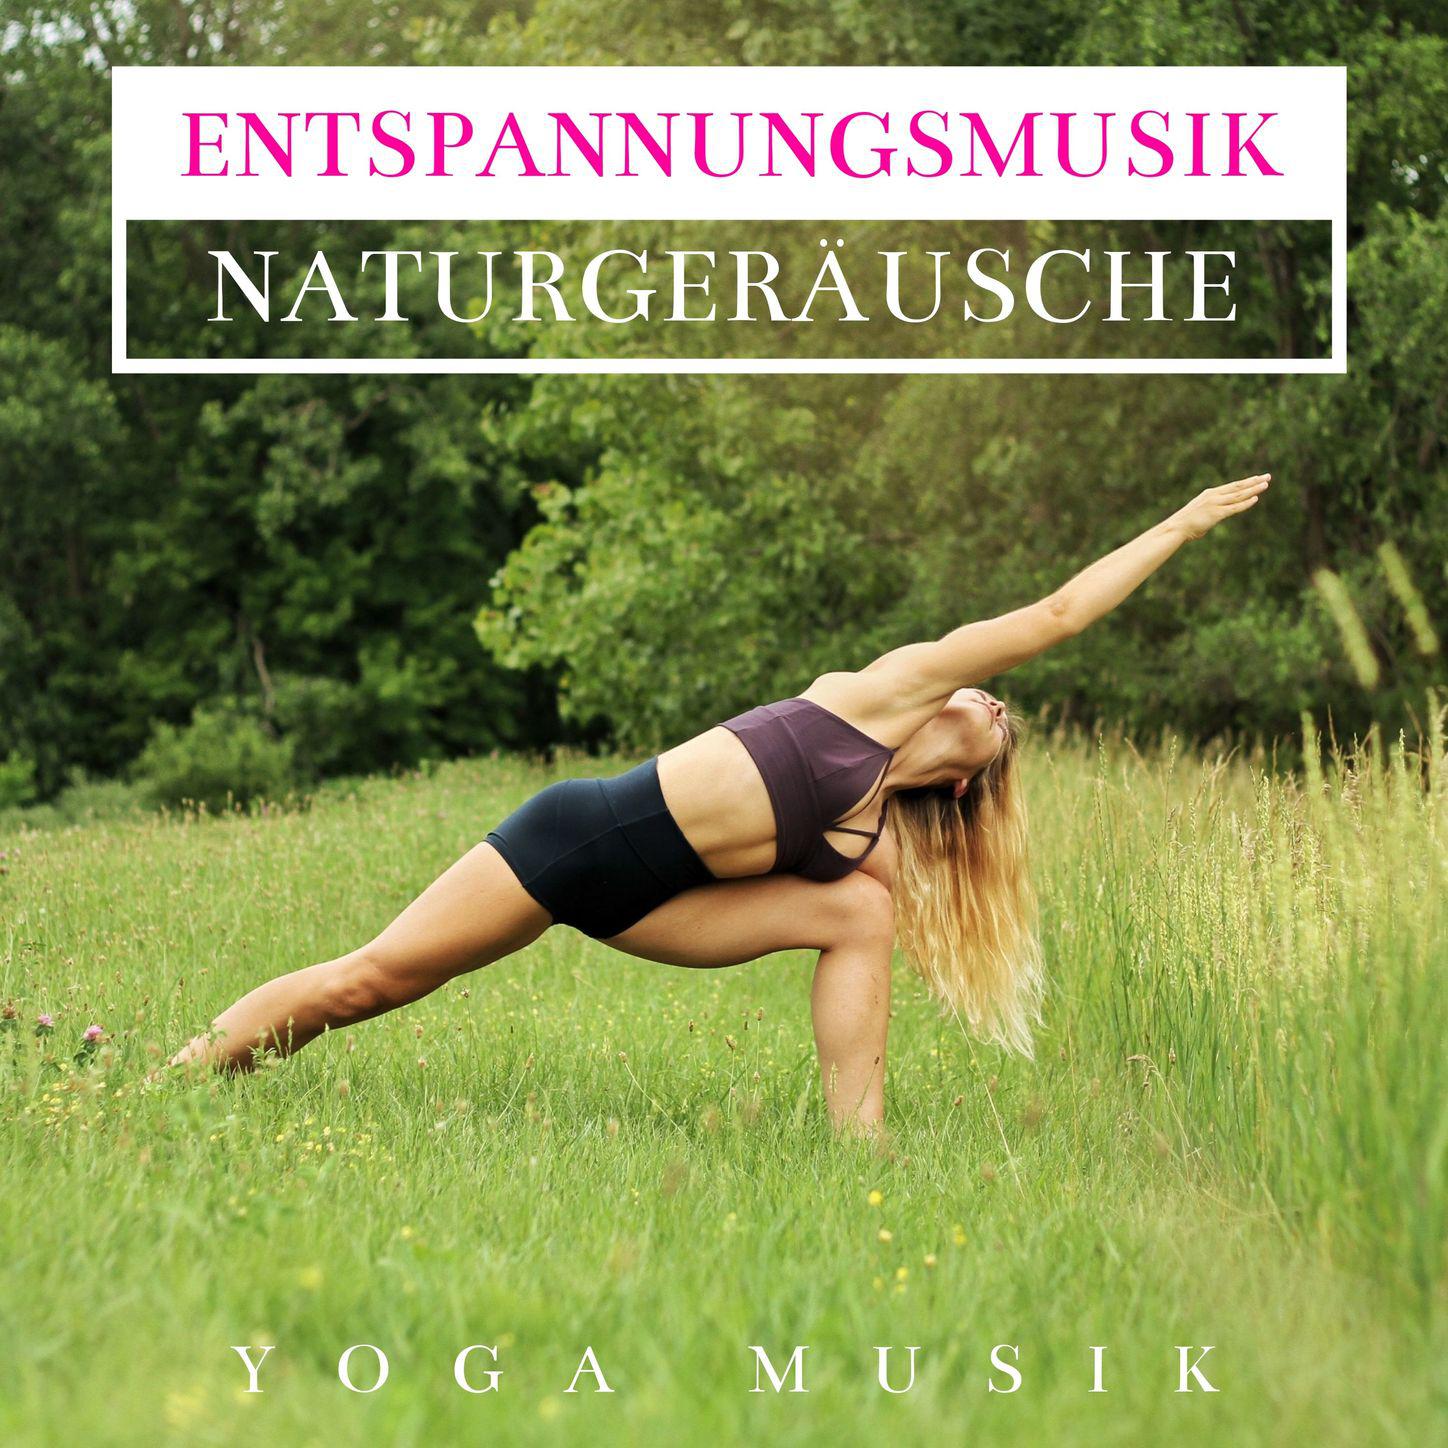 Entspannungsmusik Naturgerusche - Yoga Musik